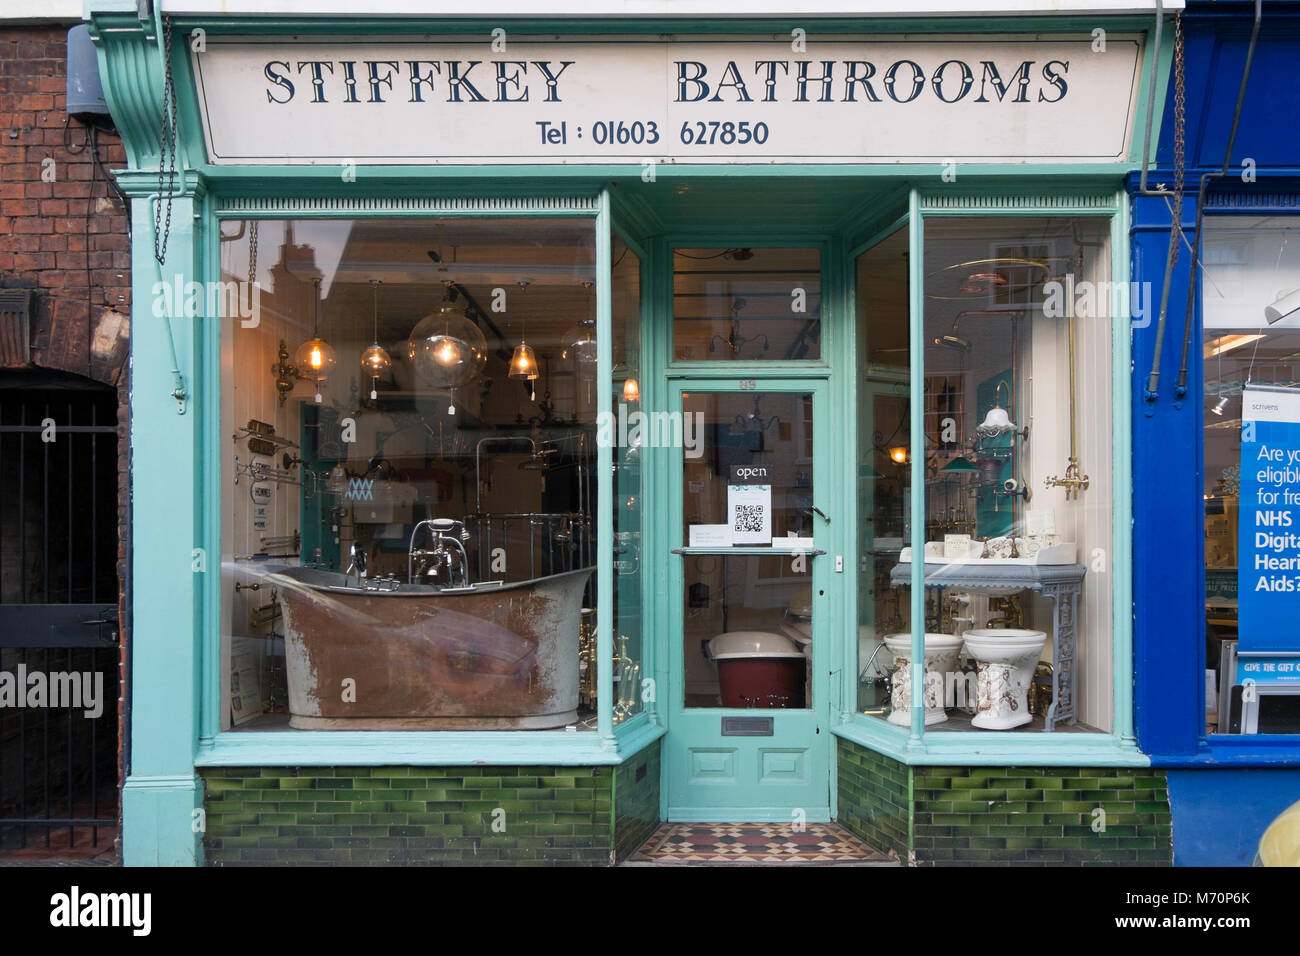 Stiffkey Bathrooms shop in Norwich, Norfolk, UK Stock Photo